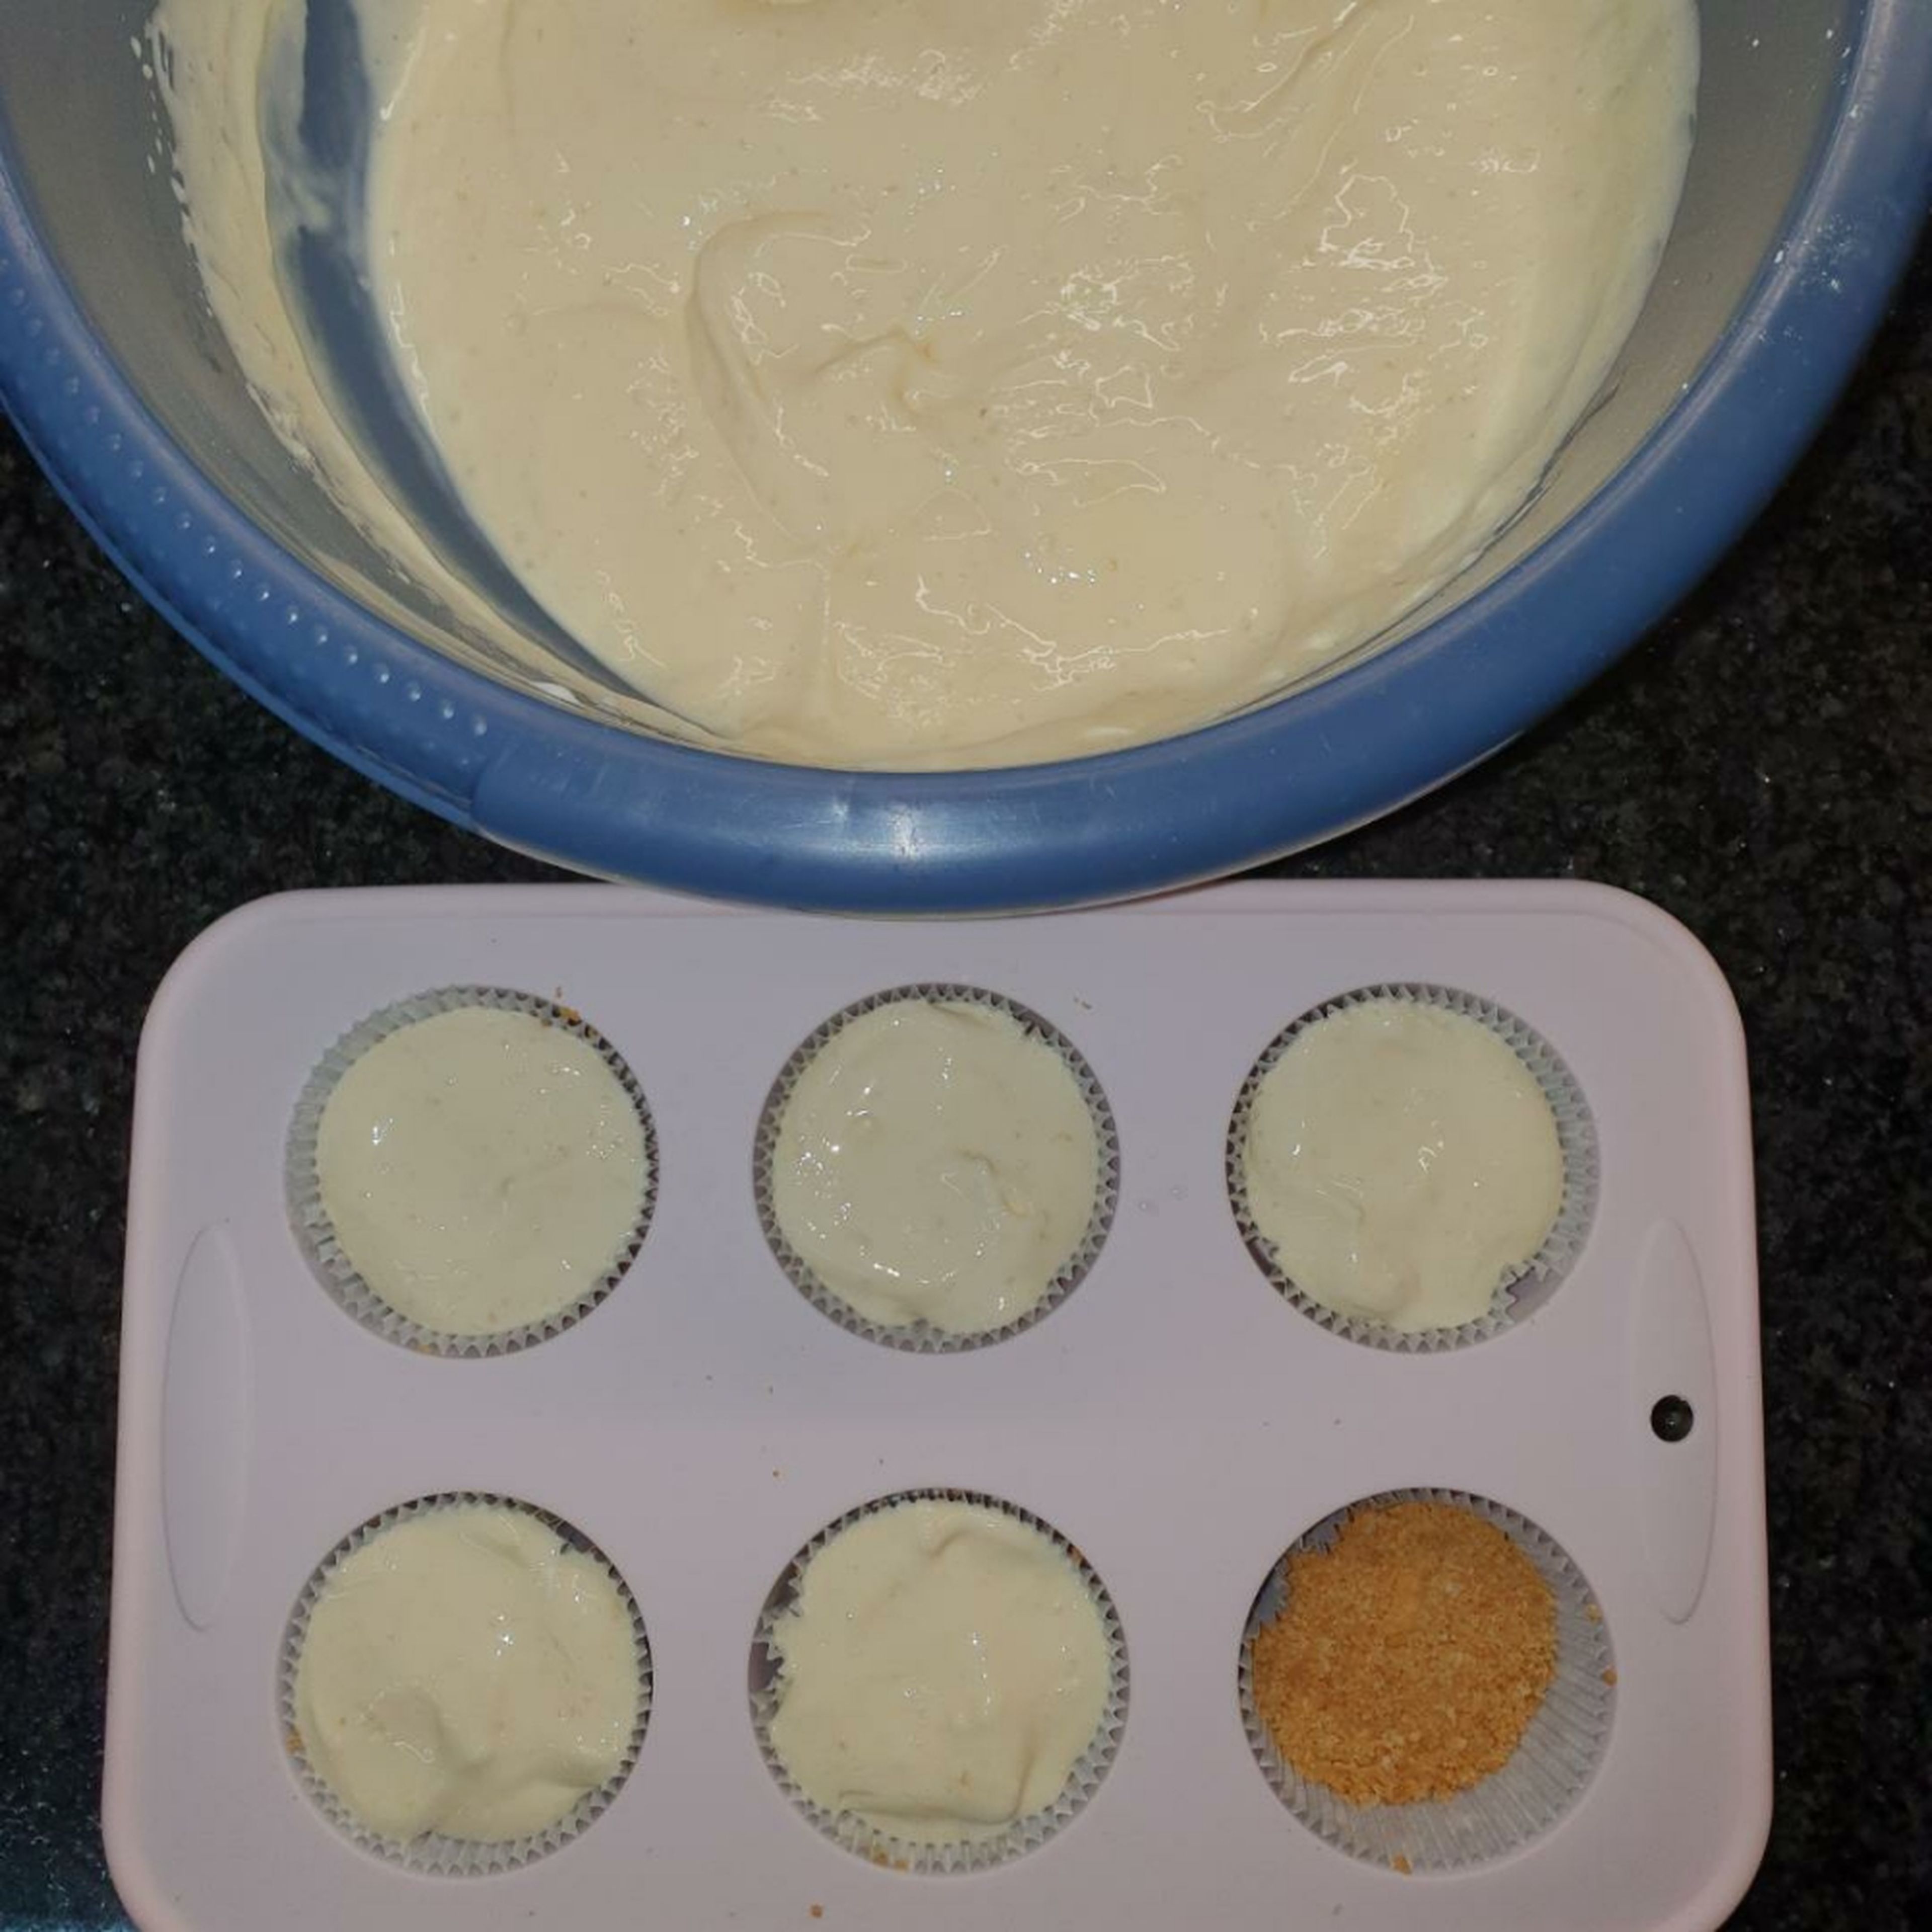 Alle Zutaten für die Käsemasse sollten Raumtemperatur haben. Zuerst den Frischkäse cremig rühren. Puderzucker, Vanillezucker und Zitronenschale unterrühren. Dann die Eier nacheinander einrühren. Zuletzt das Crème fraîche zügig einrühren. Die Käsemasse nun auf den gekühlten Keksböden verteilen und ca. 20 Minuten bei 150 Grad Ober-Unterhitze backen.